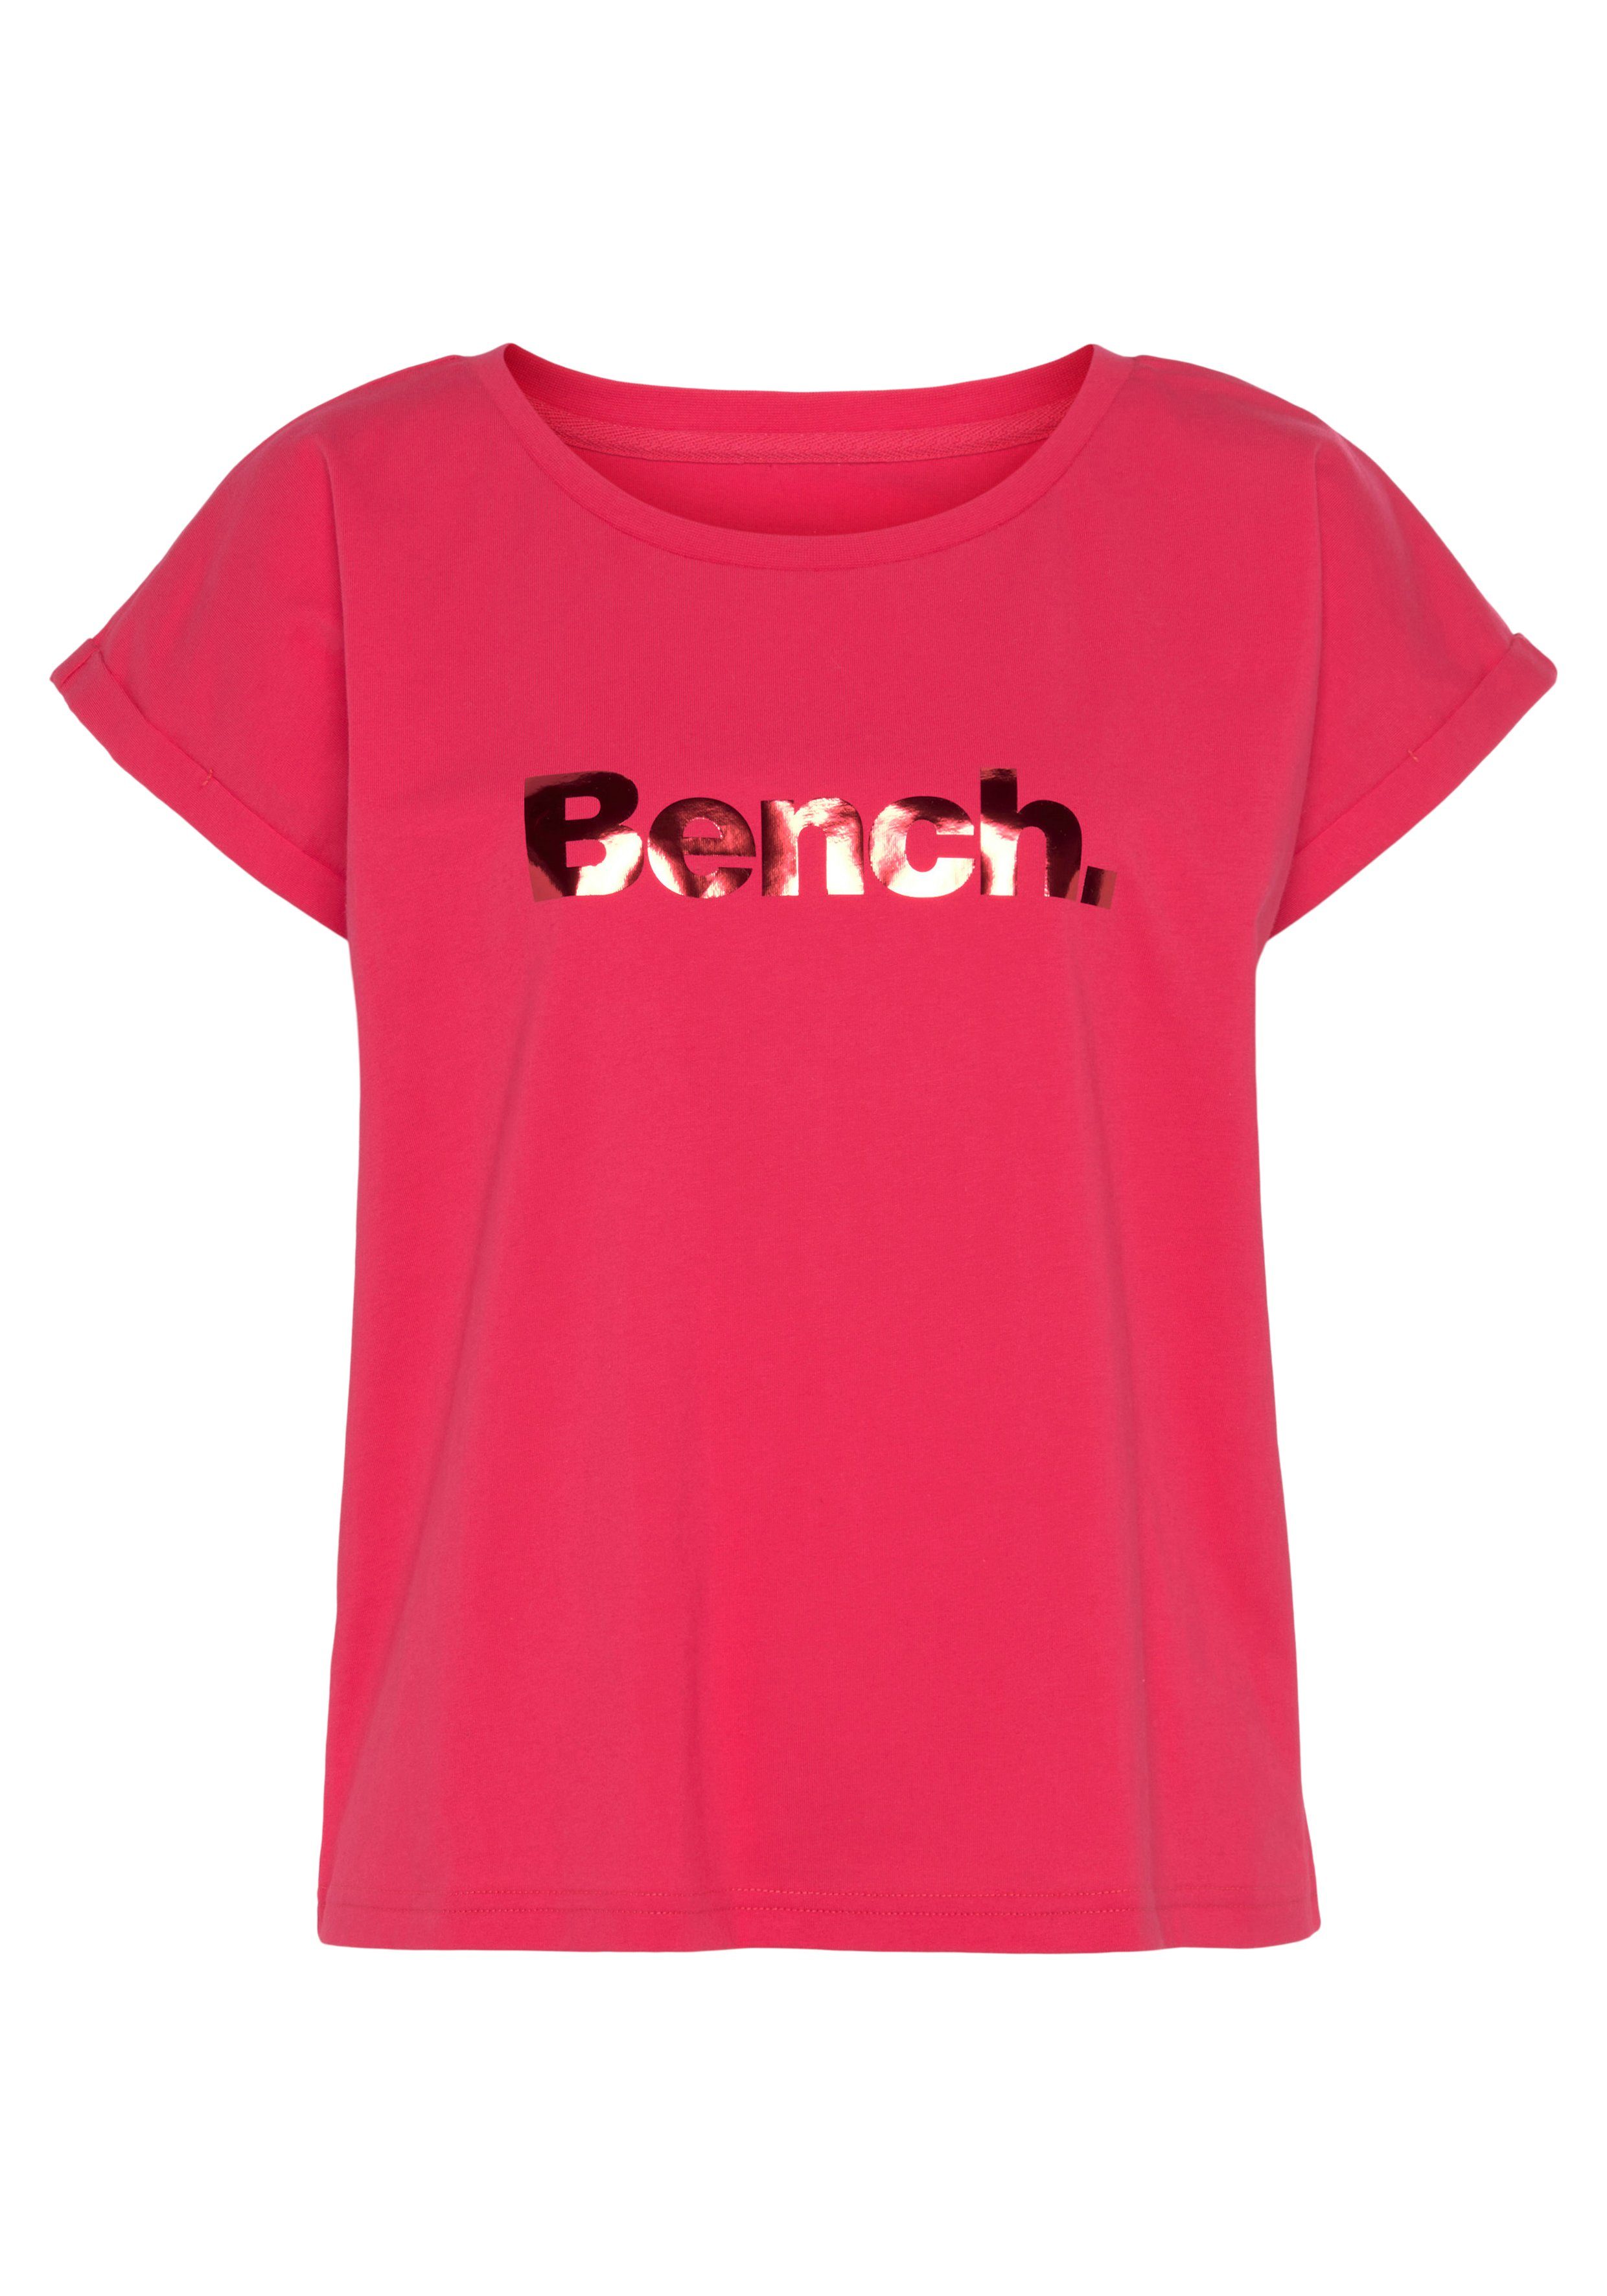 Loungewear -Kurzarmshirt, Bench. Logodruck, mit Loungeshirt T-Shirt glänzendem pink Loungewear